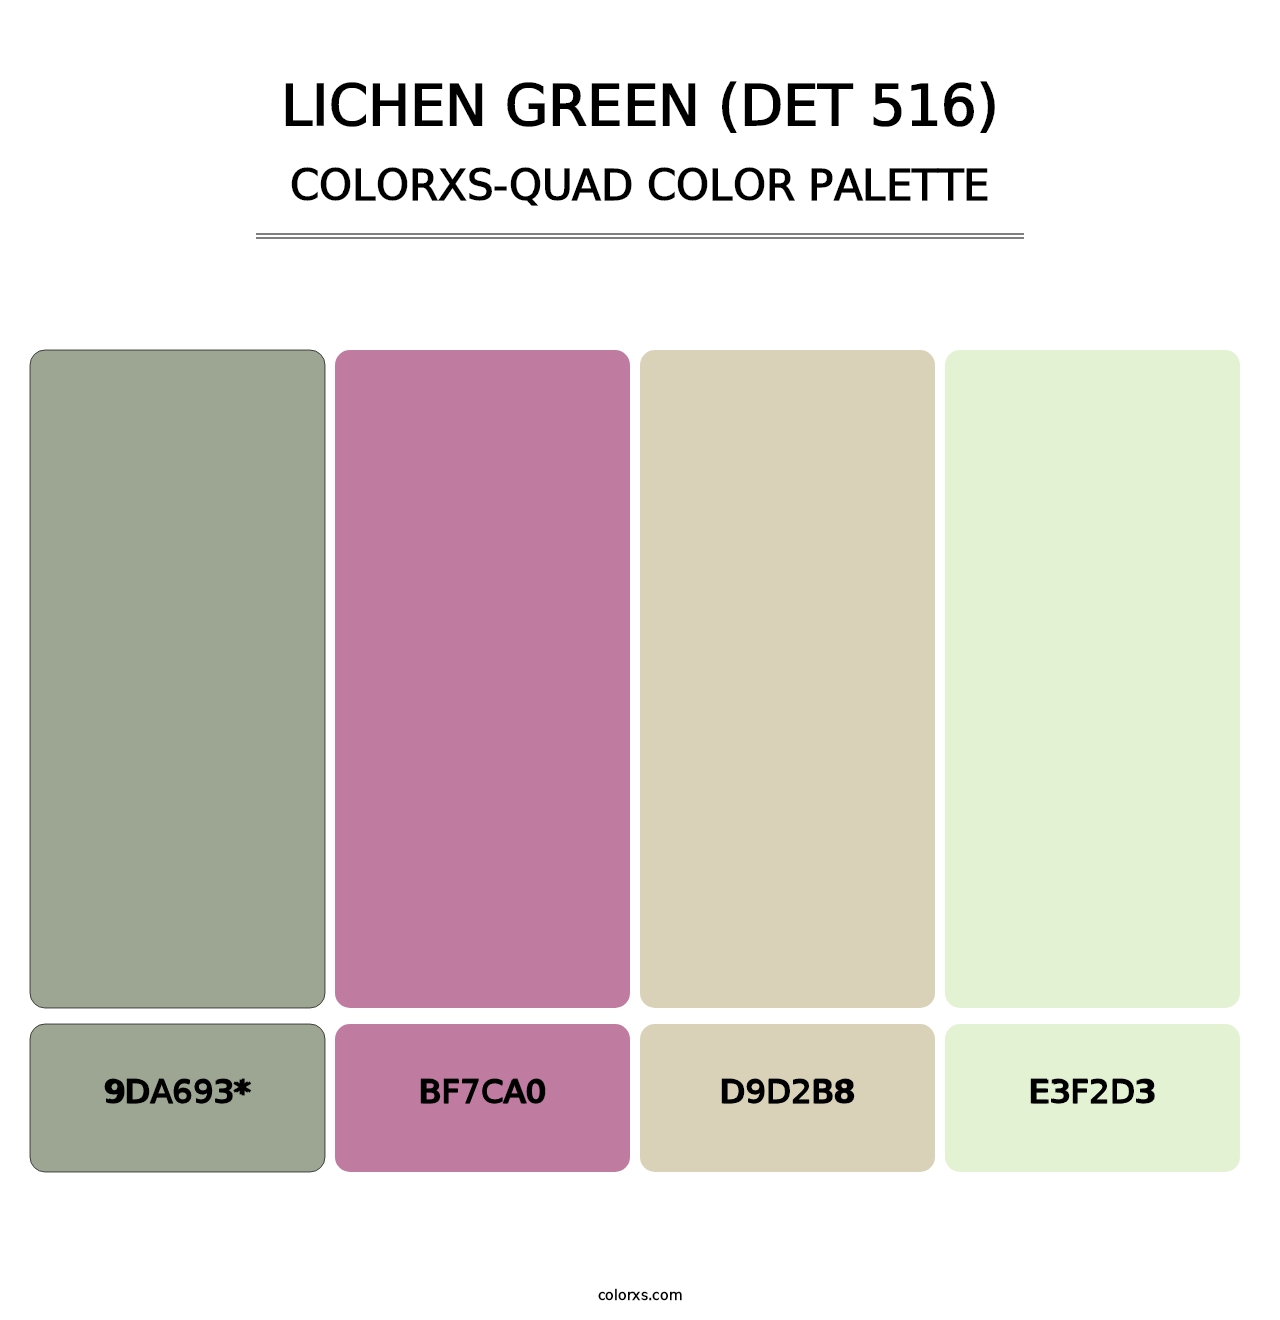 Lichen Green (DET 516) - Colorxs Quad Palette